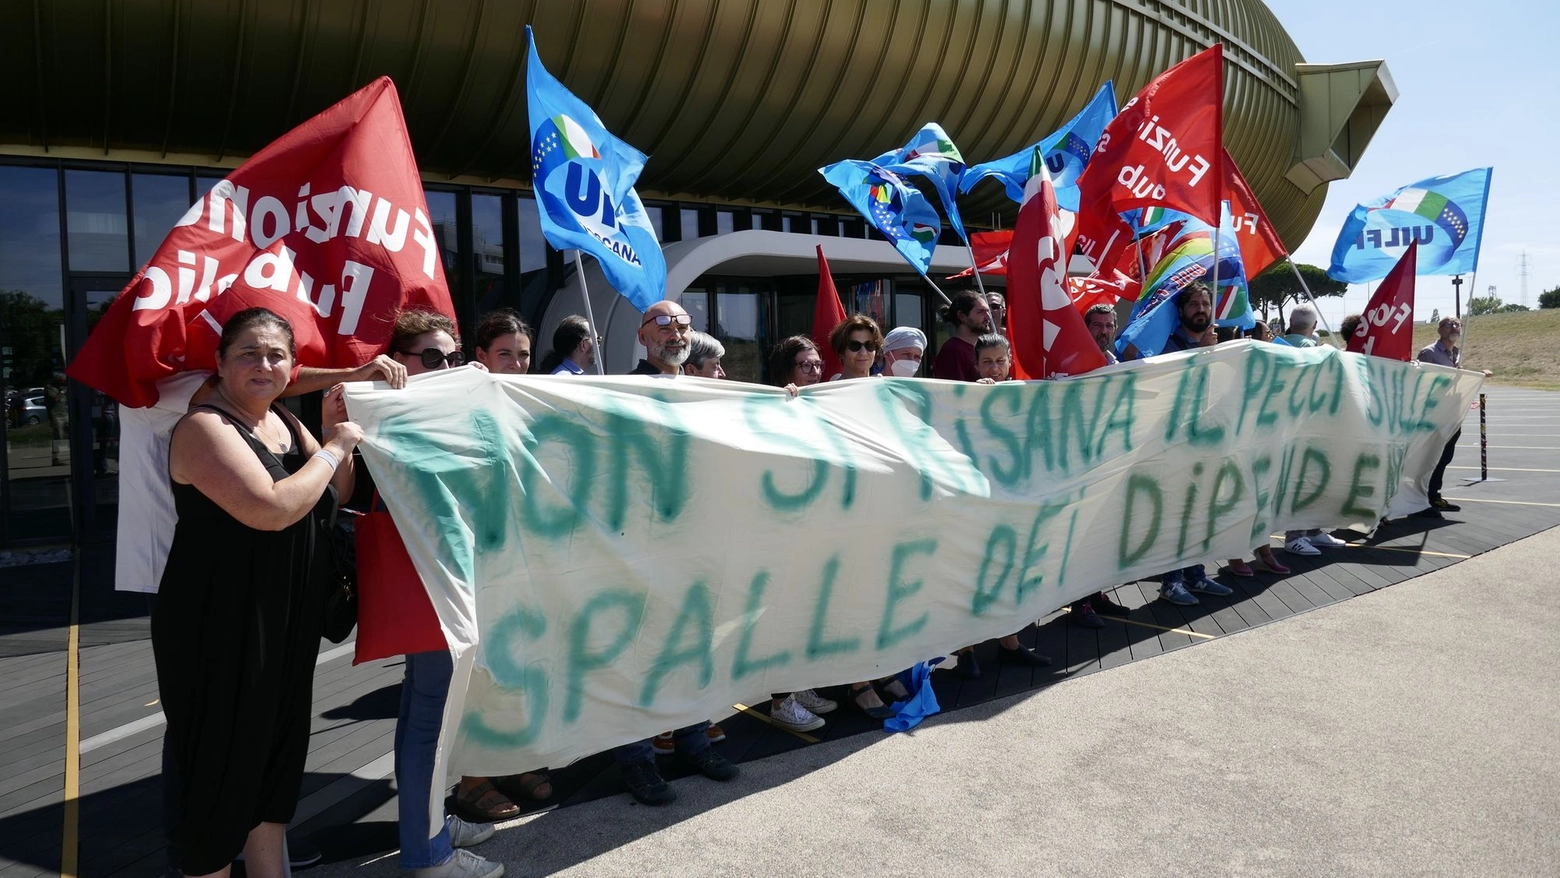 Una protesta davanti al Pecci (Foto Attalmi)